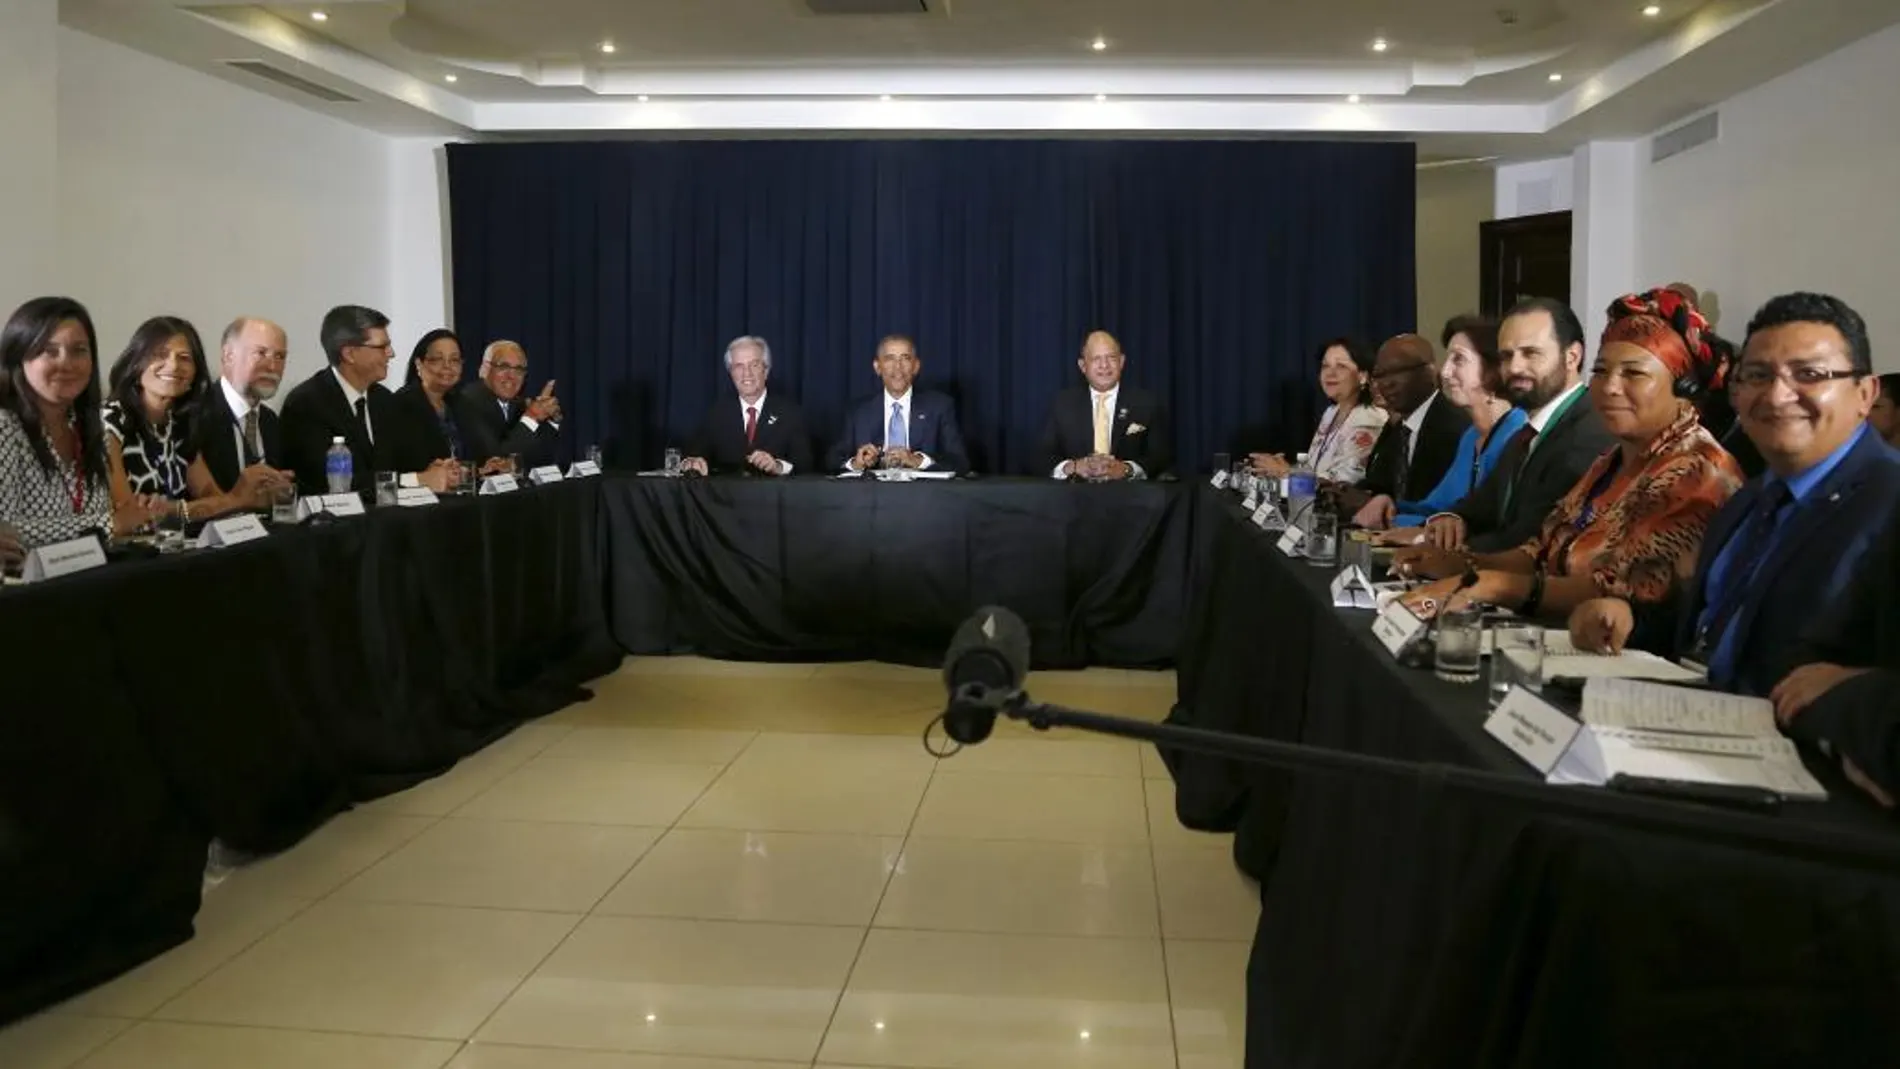 De izquierda a derecha, el presidente de Uruguay, Tabare Vazquez, Barack Obama y el presidente de Costa Rica, Luis Guillermo Solis, durante la reunión con líderes de la sociadad civil